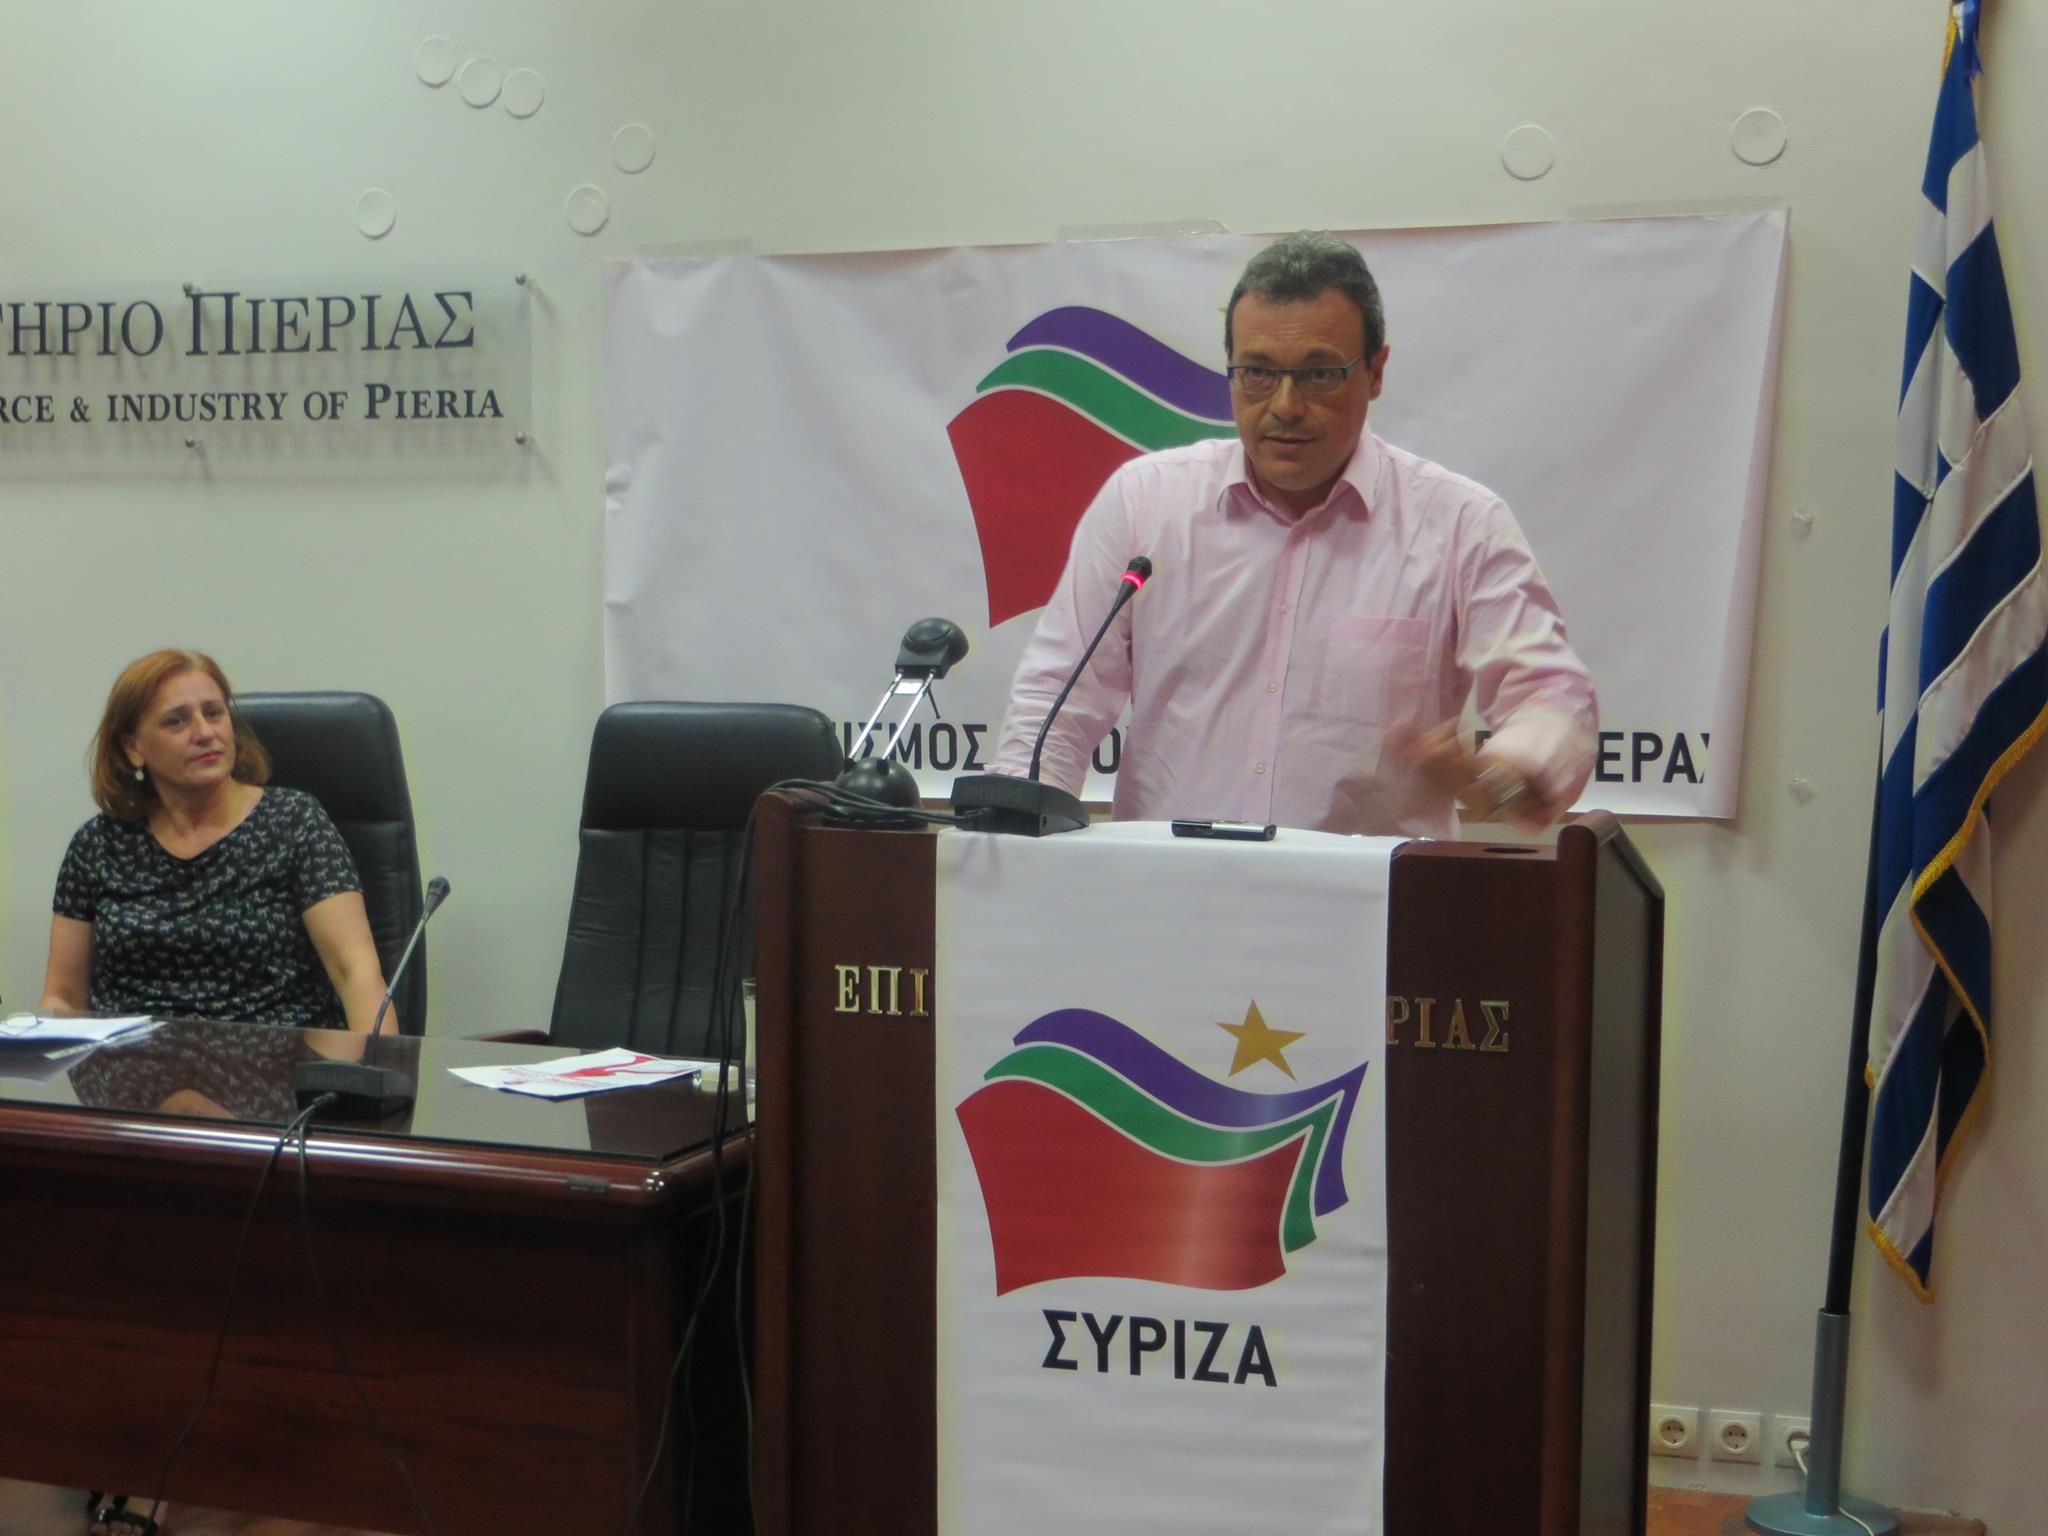 Από την εκδήλωση του ΣΥΡΙΖΑ στην Πιερία με ομιλητή τον Σωκράτη Φάμελλο, κοινοβουλευτικό εκπρόσωπο του ΣΥΡΙΖΑ